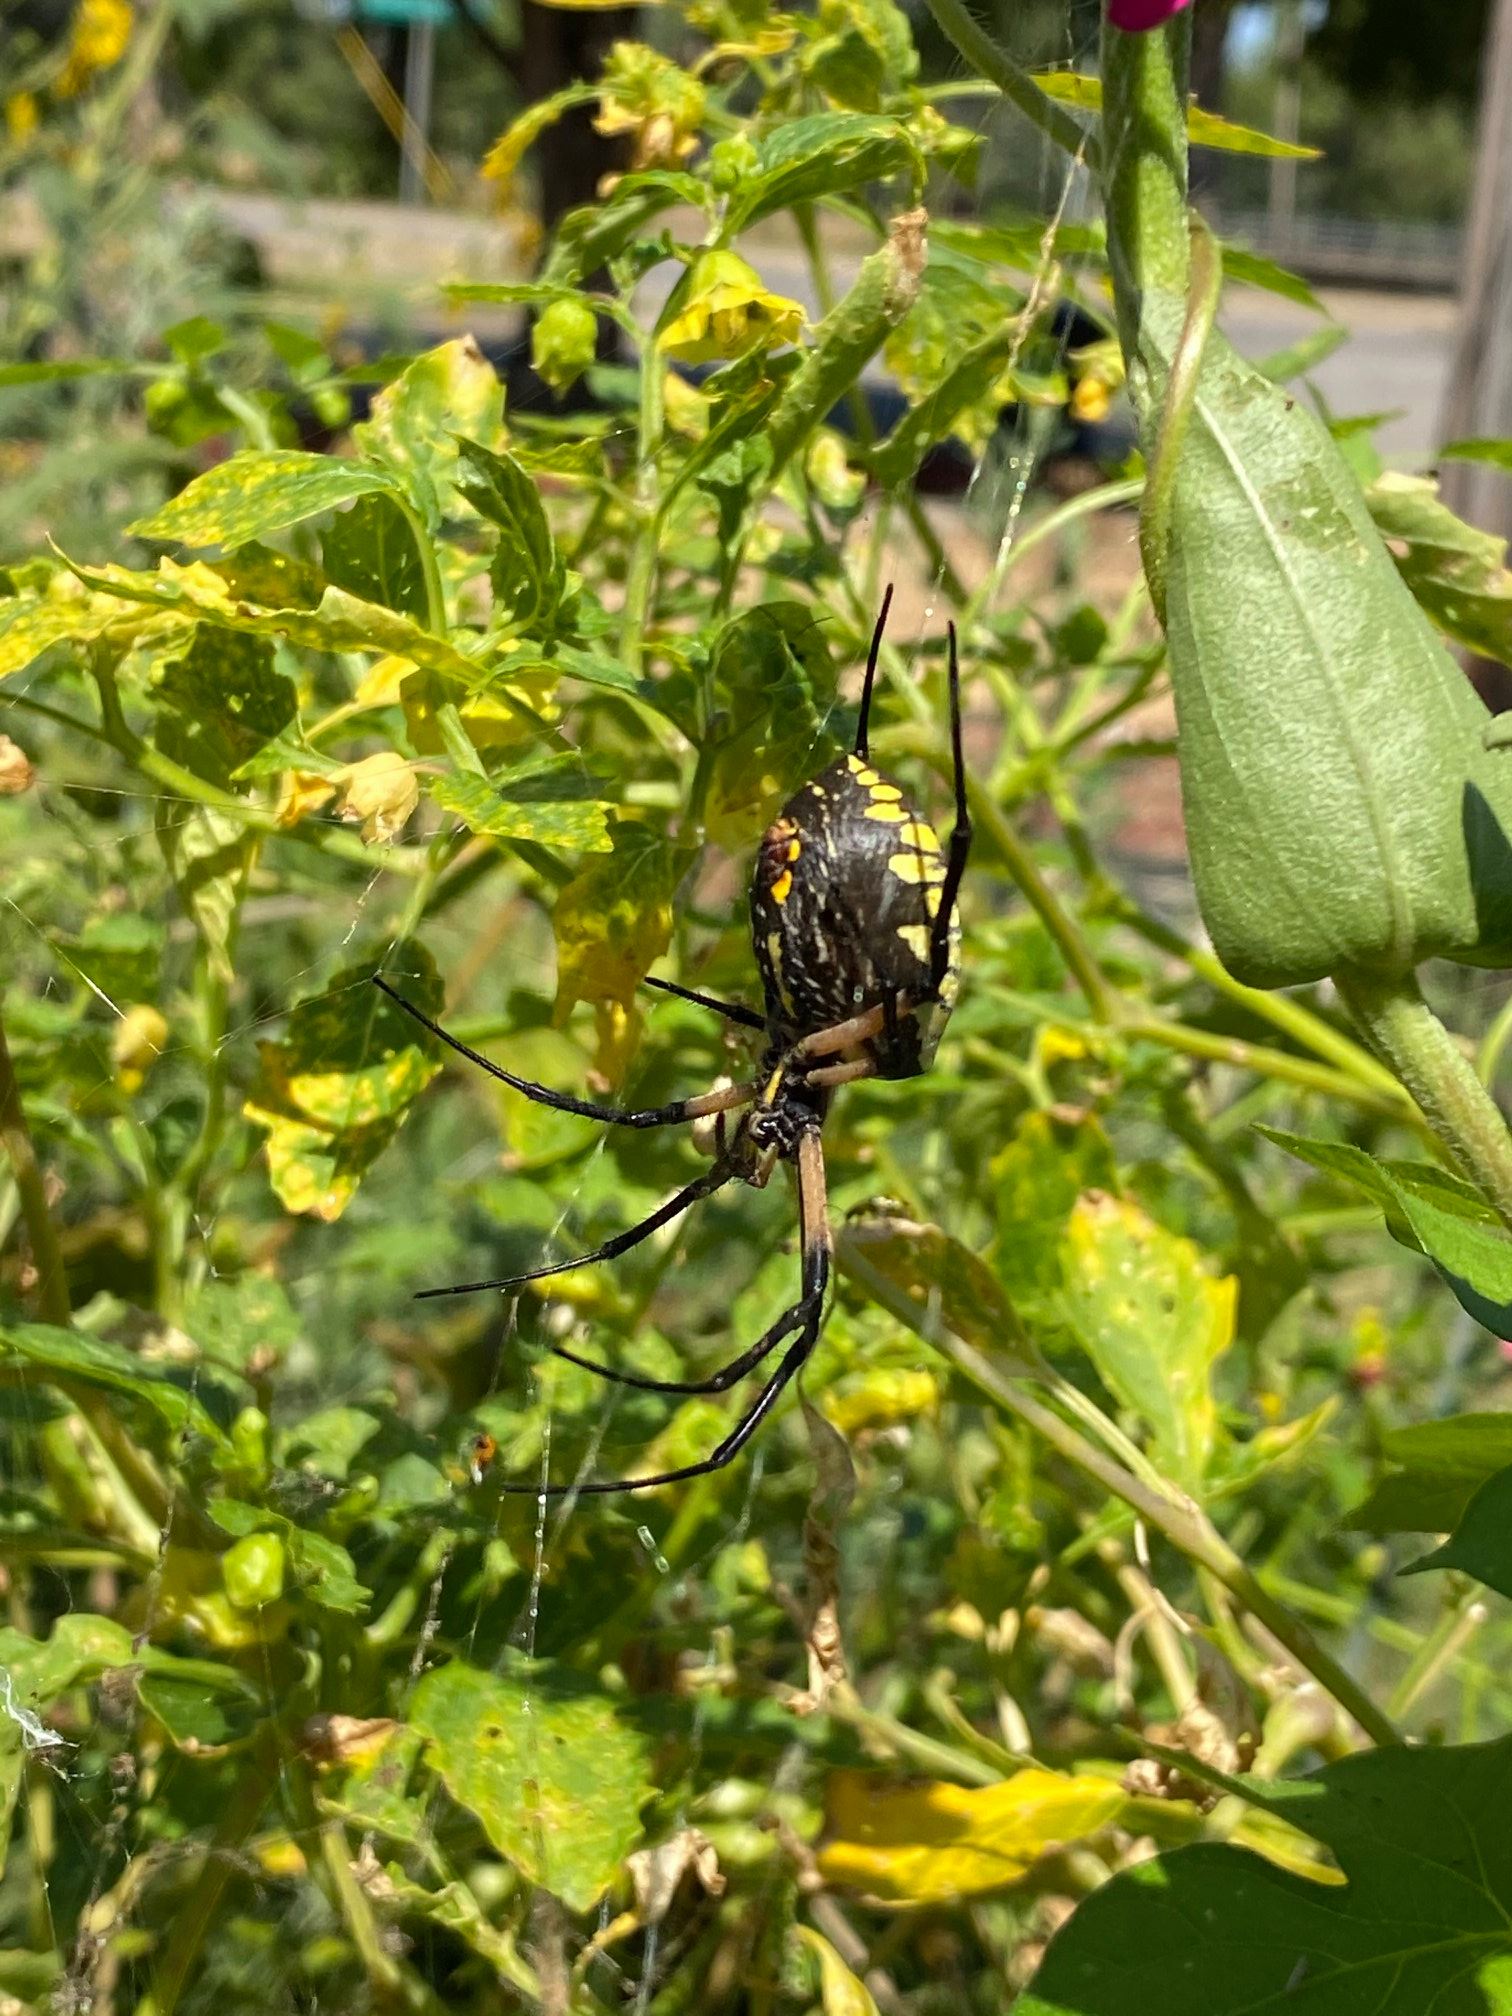 Zipper spider in the garden